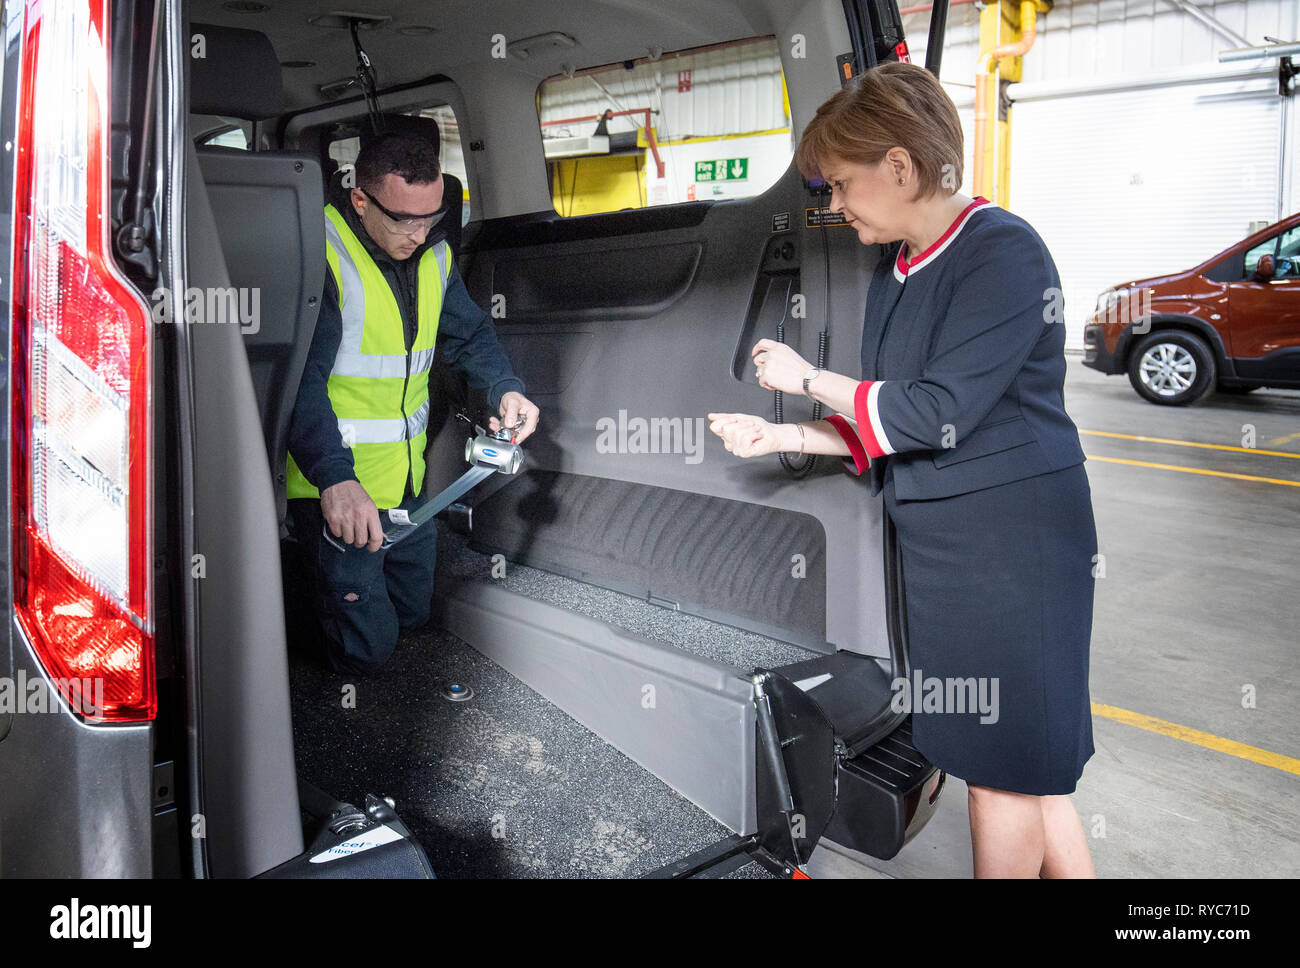 Premier ministre Nicola Sturgeon avec chef d'équipe Chris Beard (à gauche) au cours d'une visite à véhicules alliés Ltd à Glasgow où les voitures sont transformées et modifiées pour les rendre accessibles en fauteuil roulant. Banque D'Images